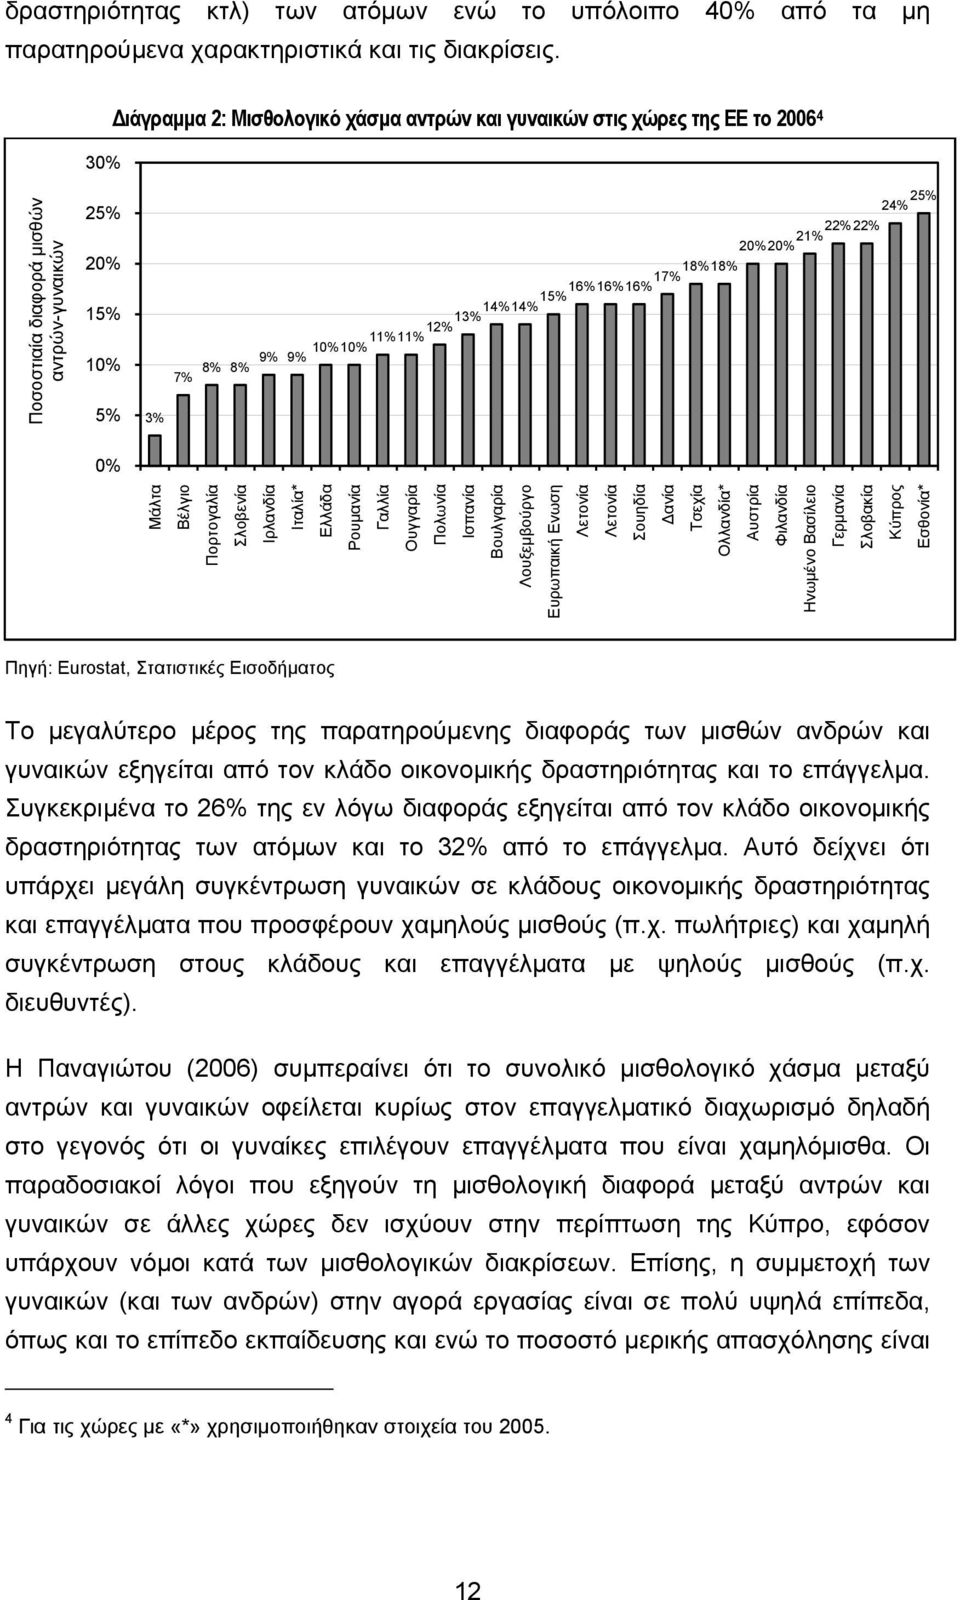 Βέλγιο Πορτογαλία Σλοβενία Ιρλανδία Ποσοστιαία διαφορά μισθών αντρών-γυναικών Ιταλία* Ελλάδα Ρουμανία Γαλλία Ουγγαρία Πολωνία Ισπανία Βουλγαρία Λουξεμβούργο Ευρωπαική Ενωση Λετονία Λετονία Σουηδία